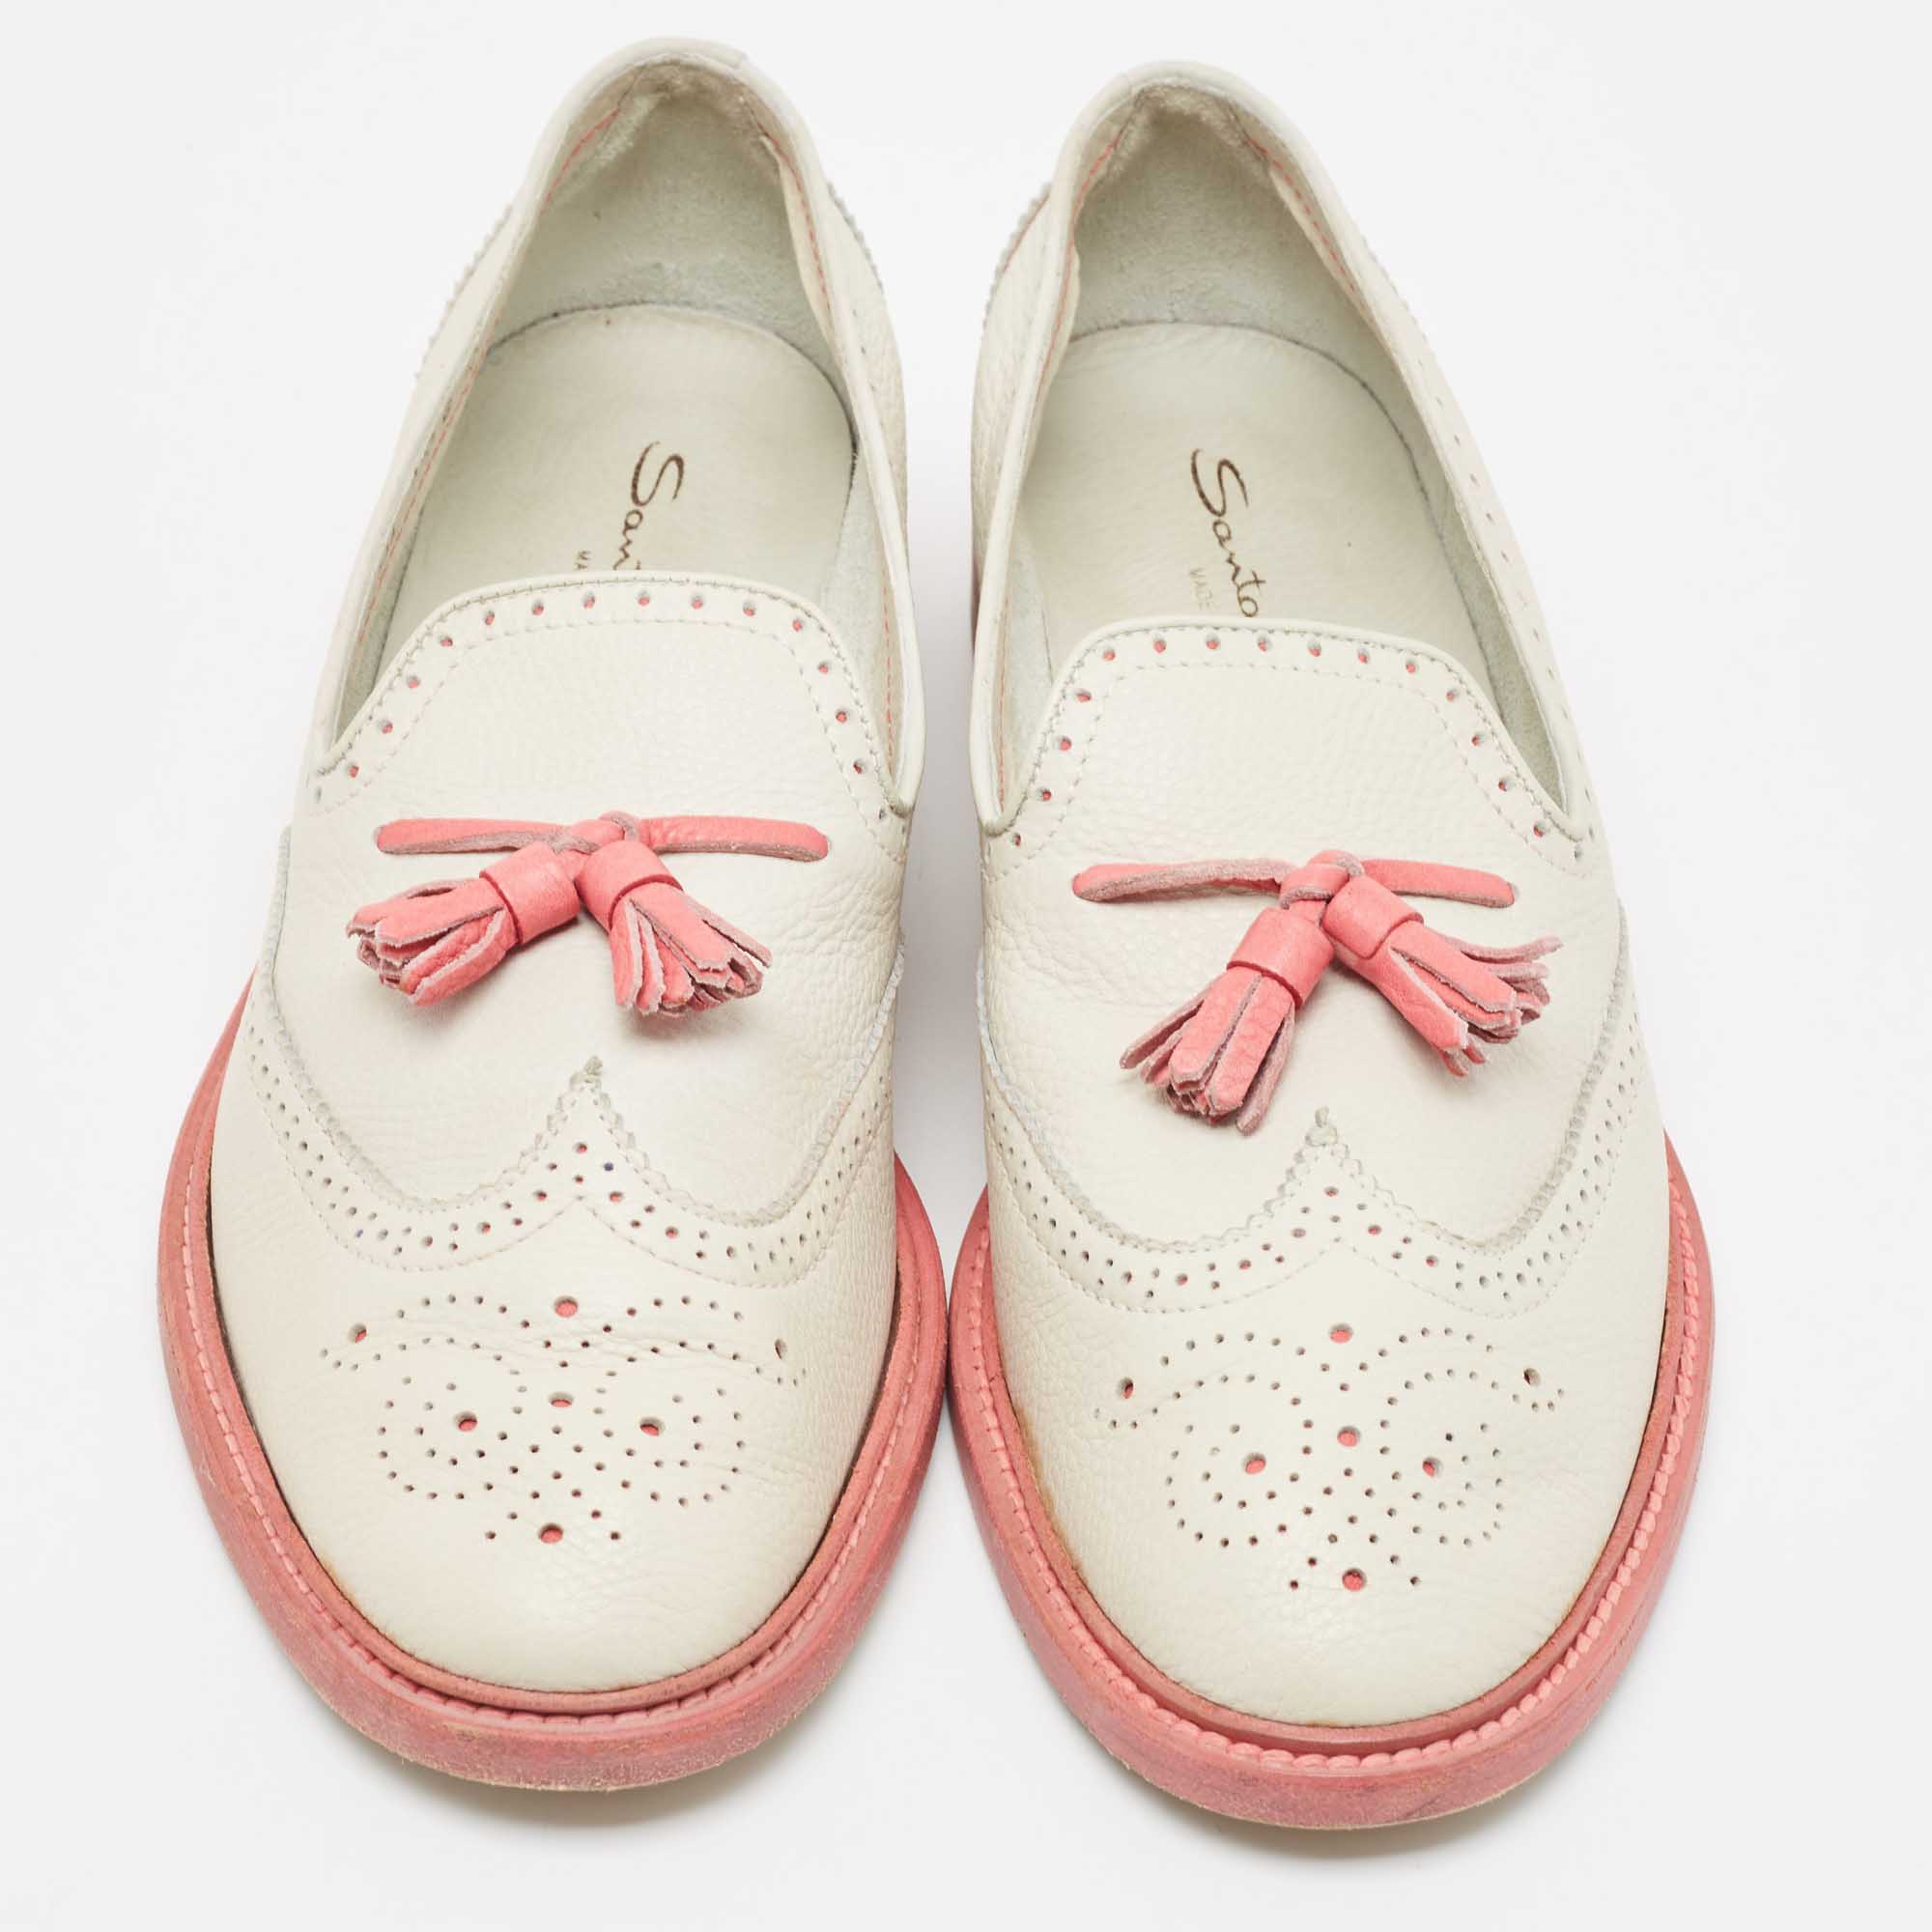 Santoni Light Grey/Pink Brogue Leather Fringe Detail Slip On Loafers Size 40